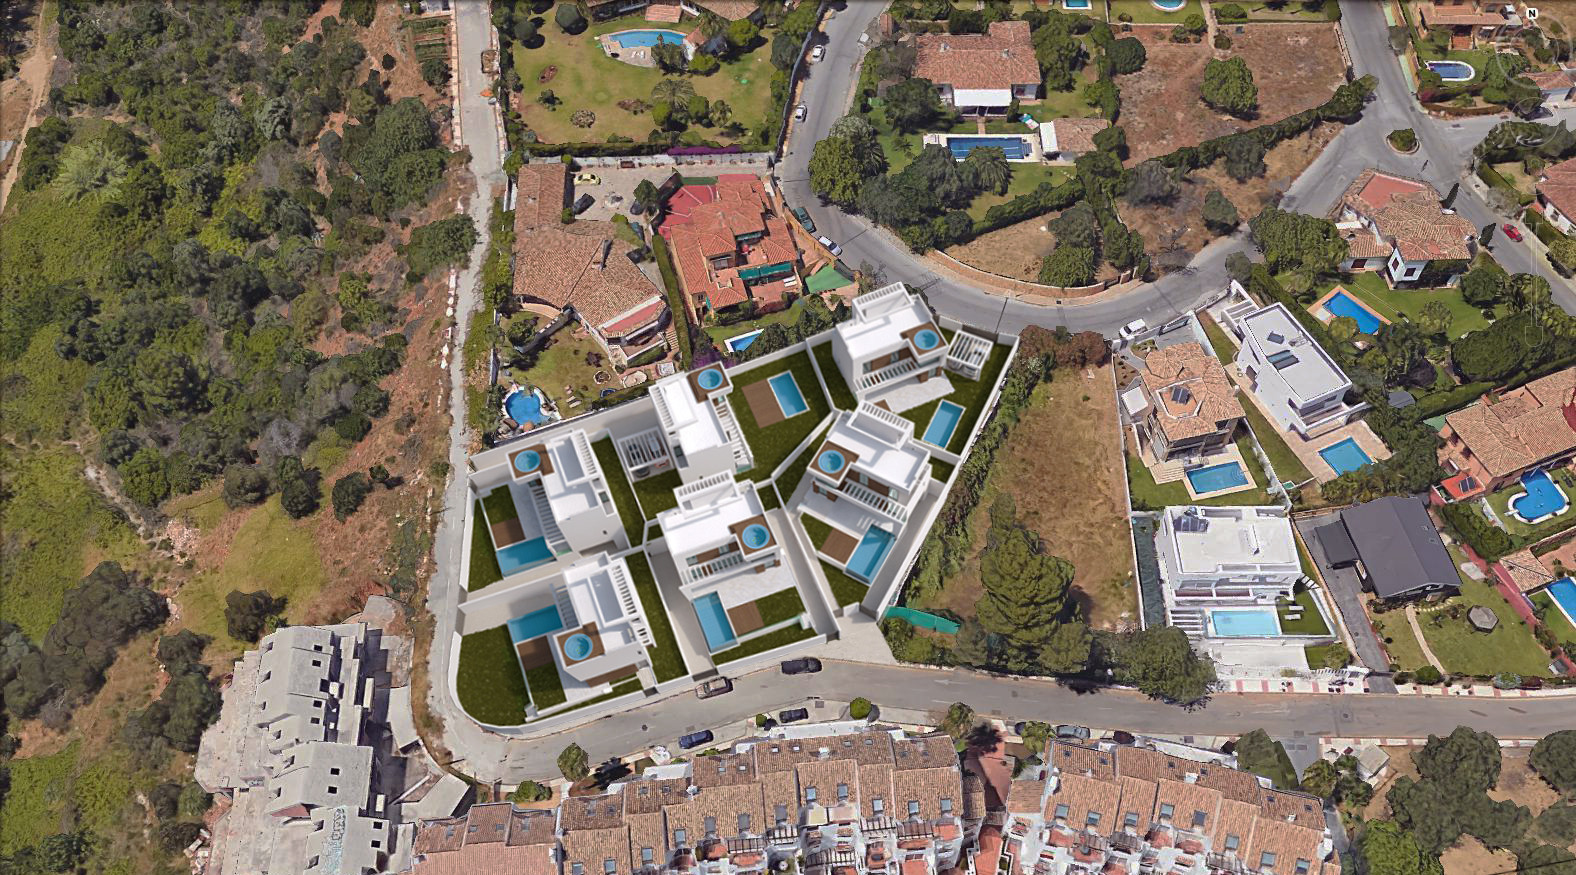 Terreno para la construcción de 6 villas independientes en Marbella - mibgroup.es